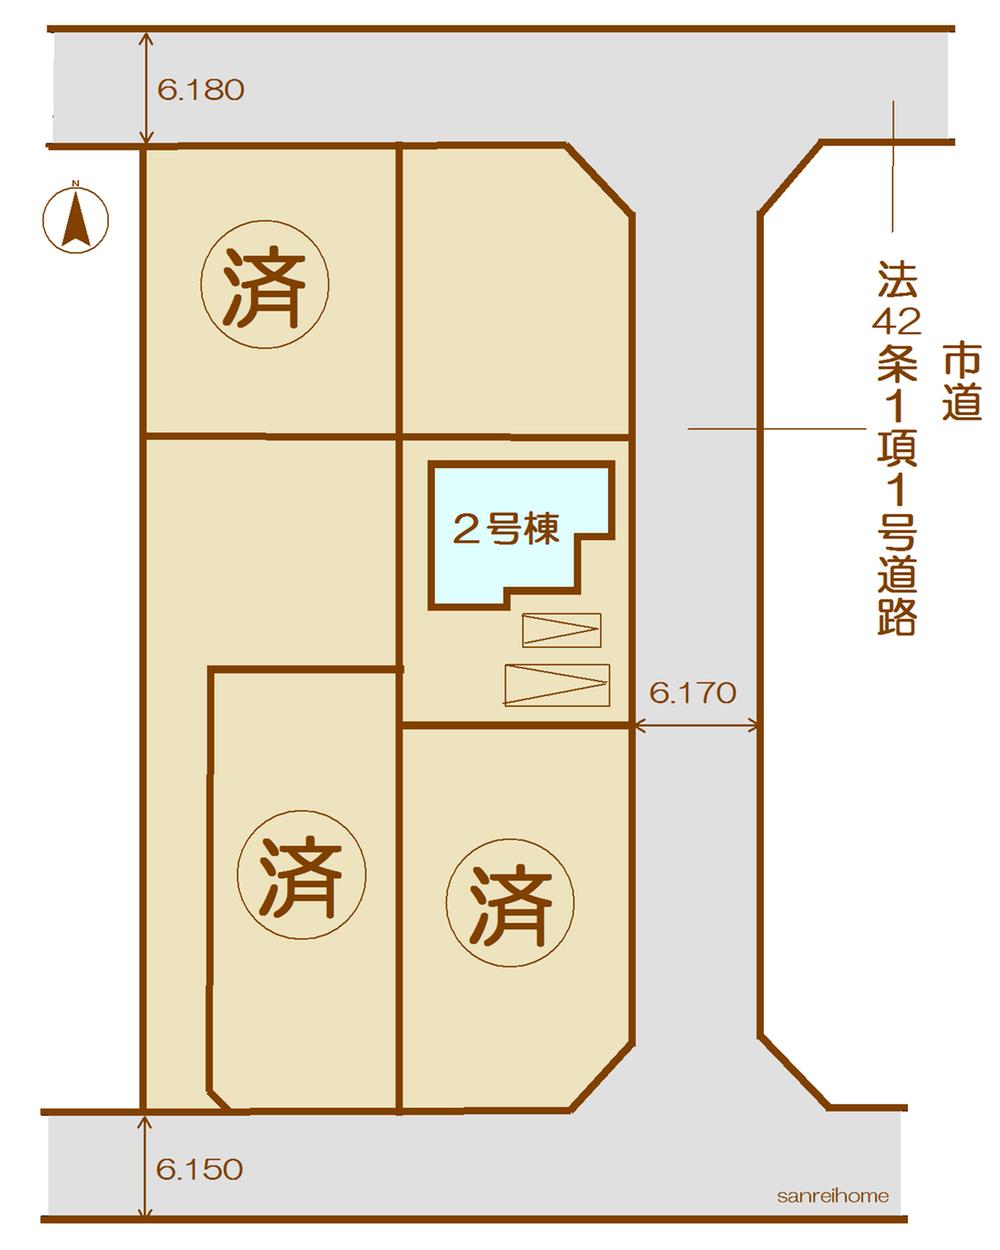 Compartment figure. 26,900,000 yen, 4LDK, Land area 164.34 sq m , Building area 105.99 sq m